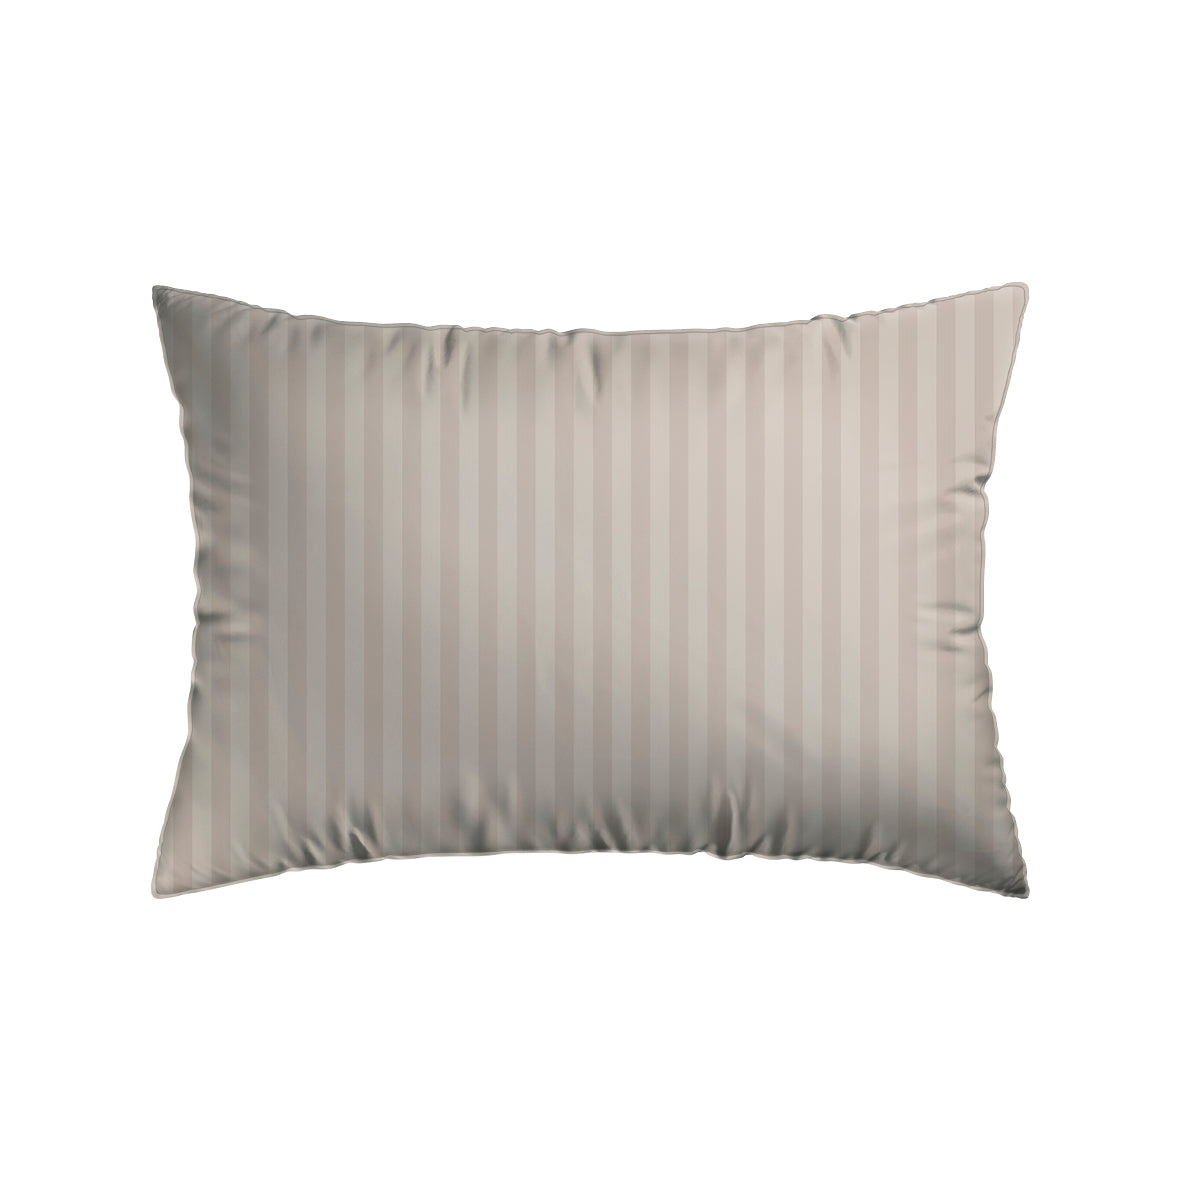 Pillowcase(s) in cotton satin - Dobby stripe Taupe